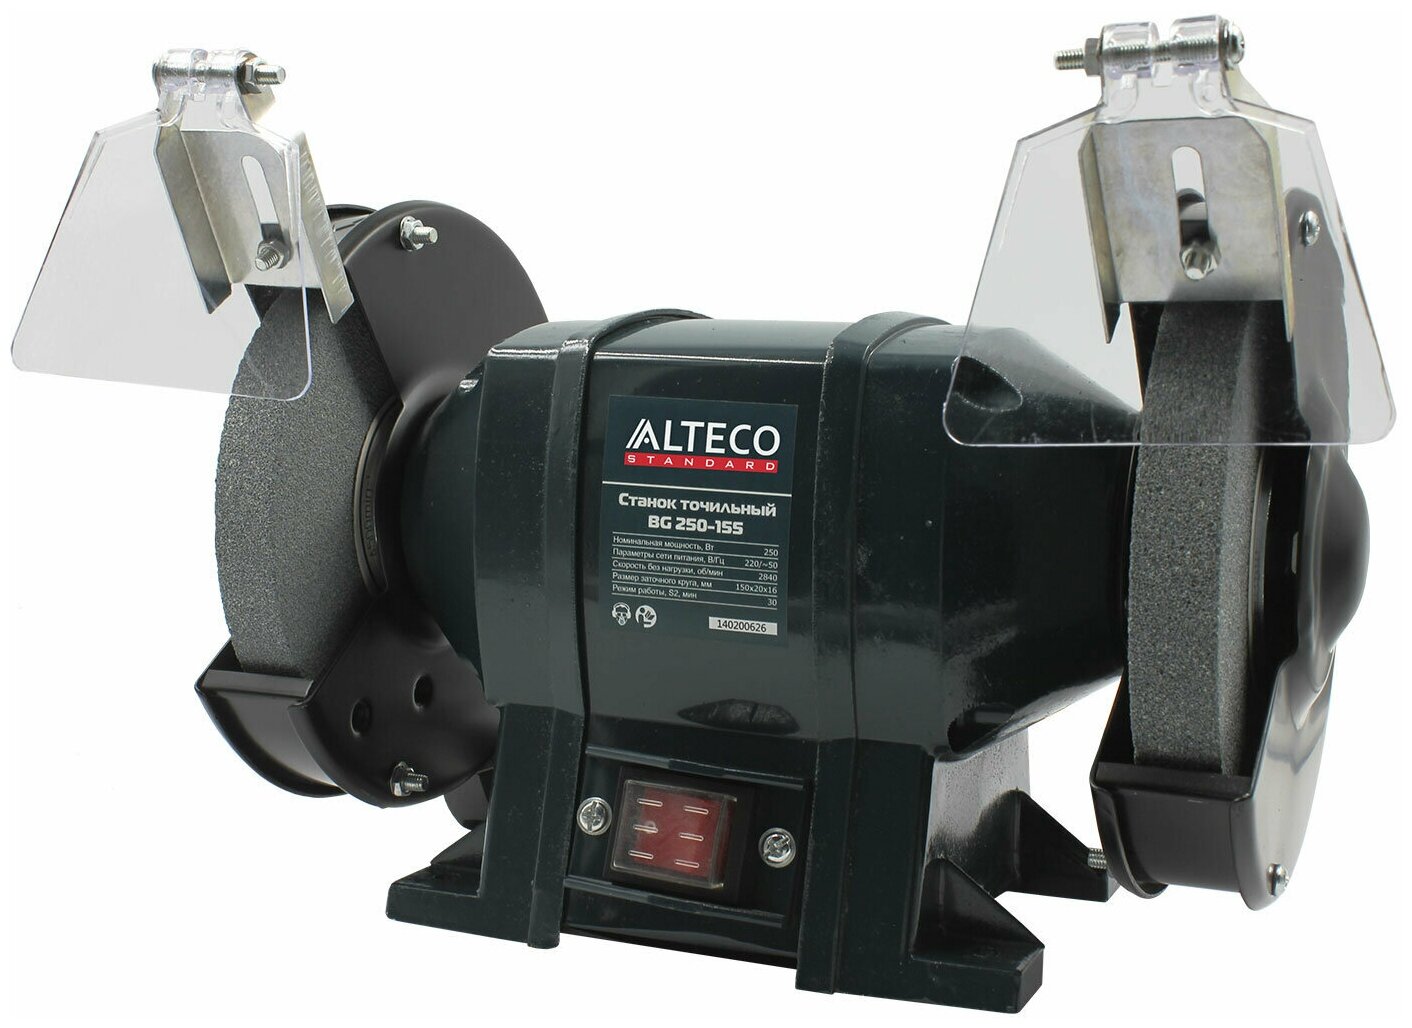 Точильный станок ALTECO Standard BG 350-200